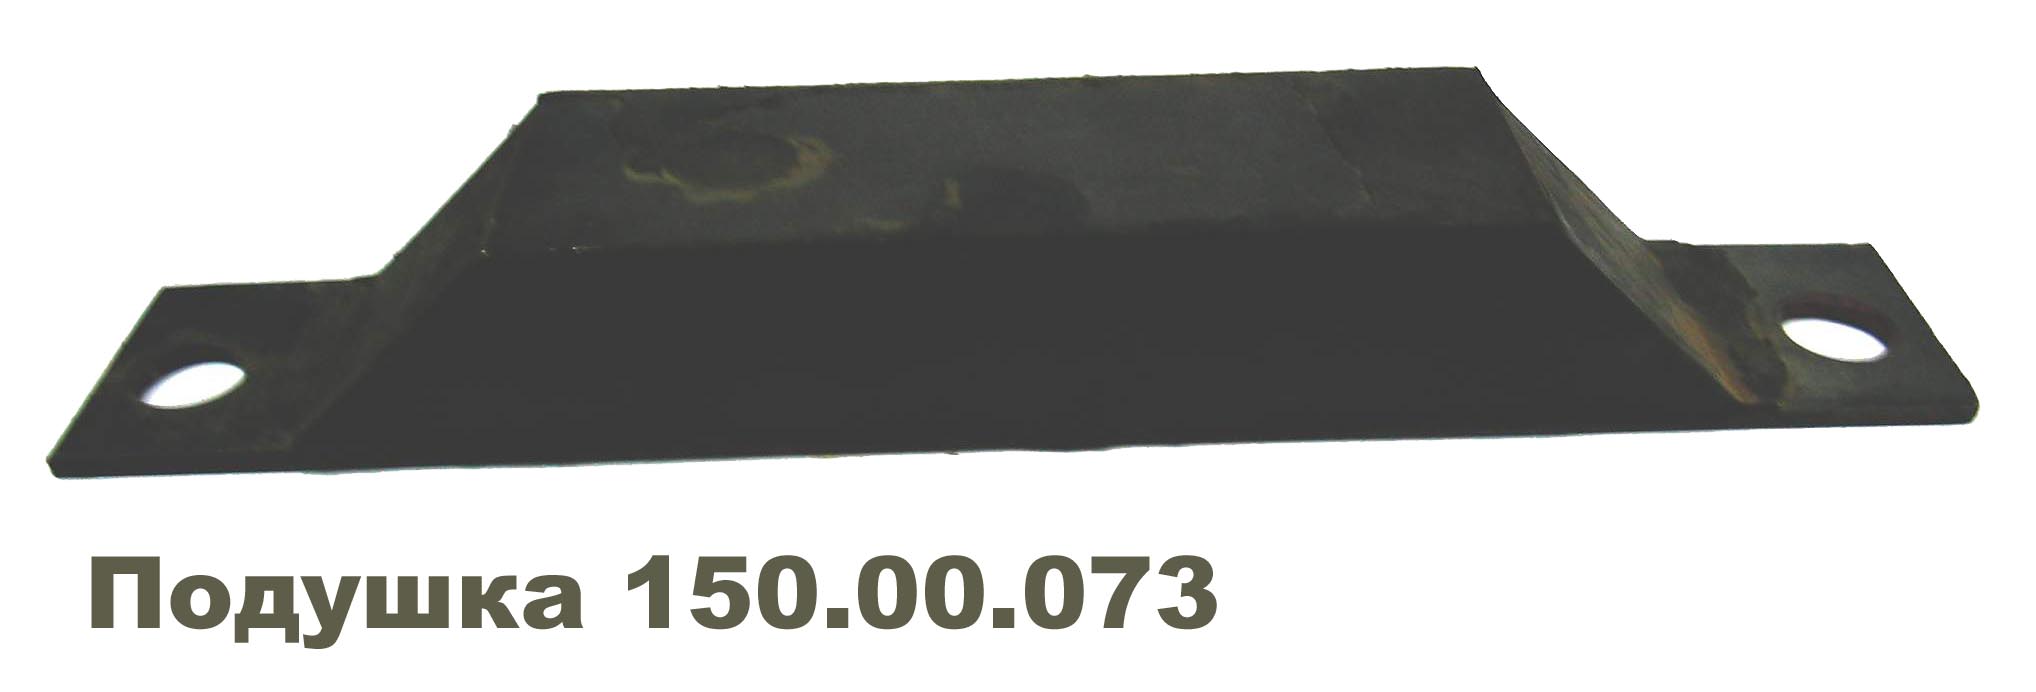 Подушка двигателя передняя (Т-150)  150.00.073